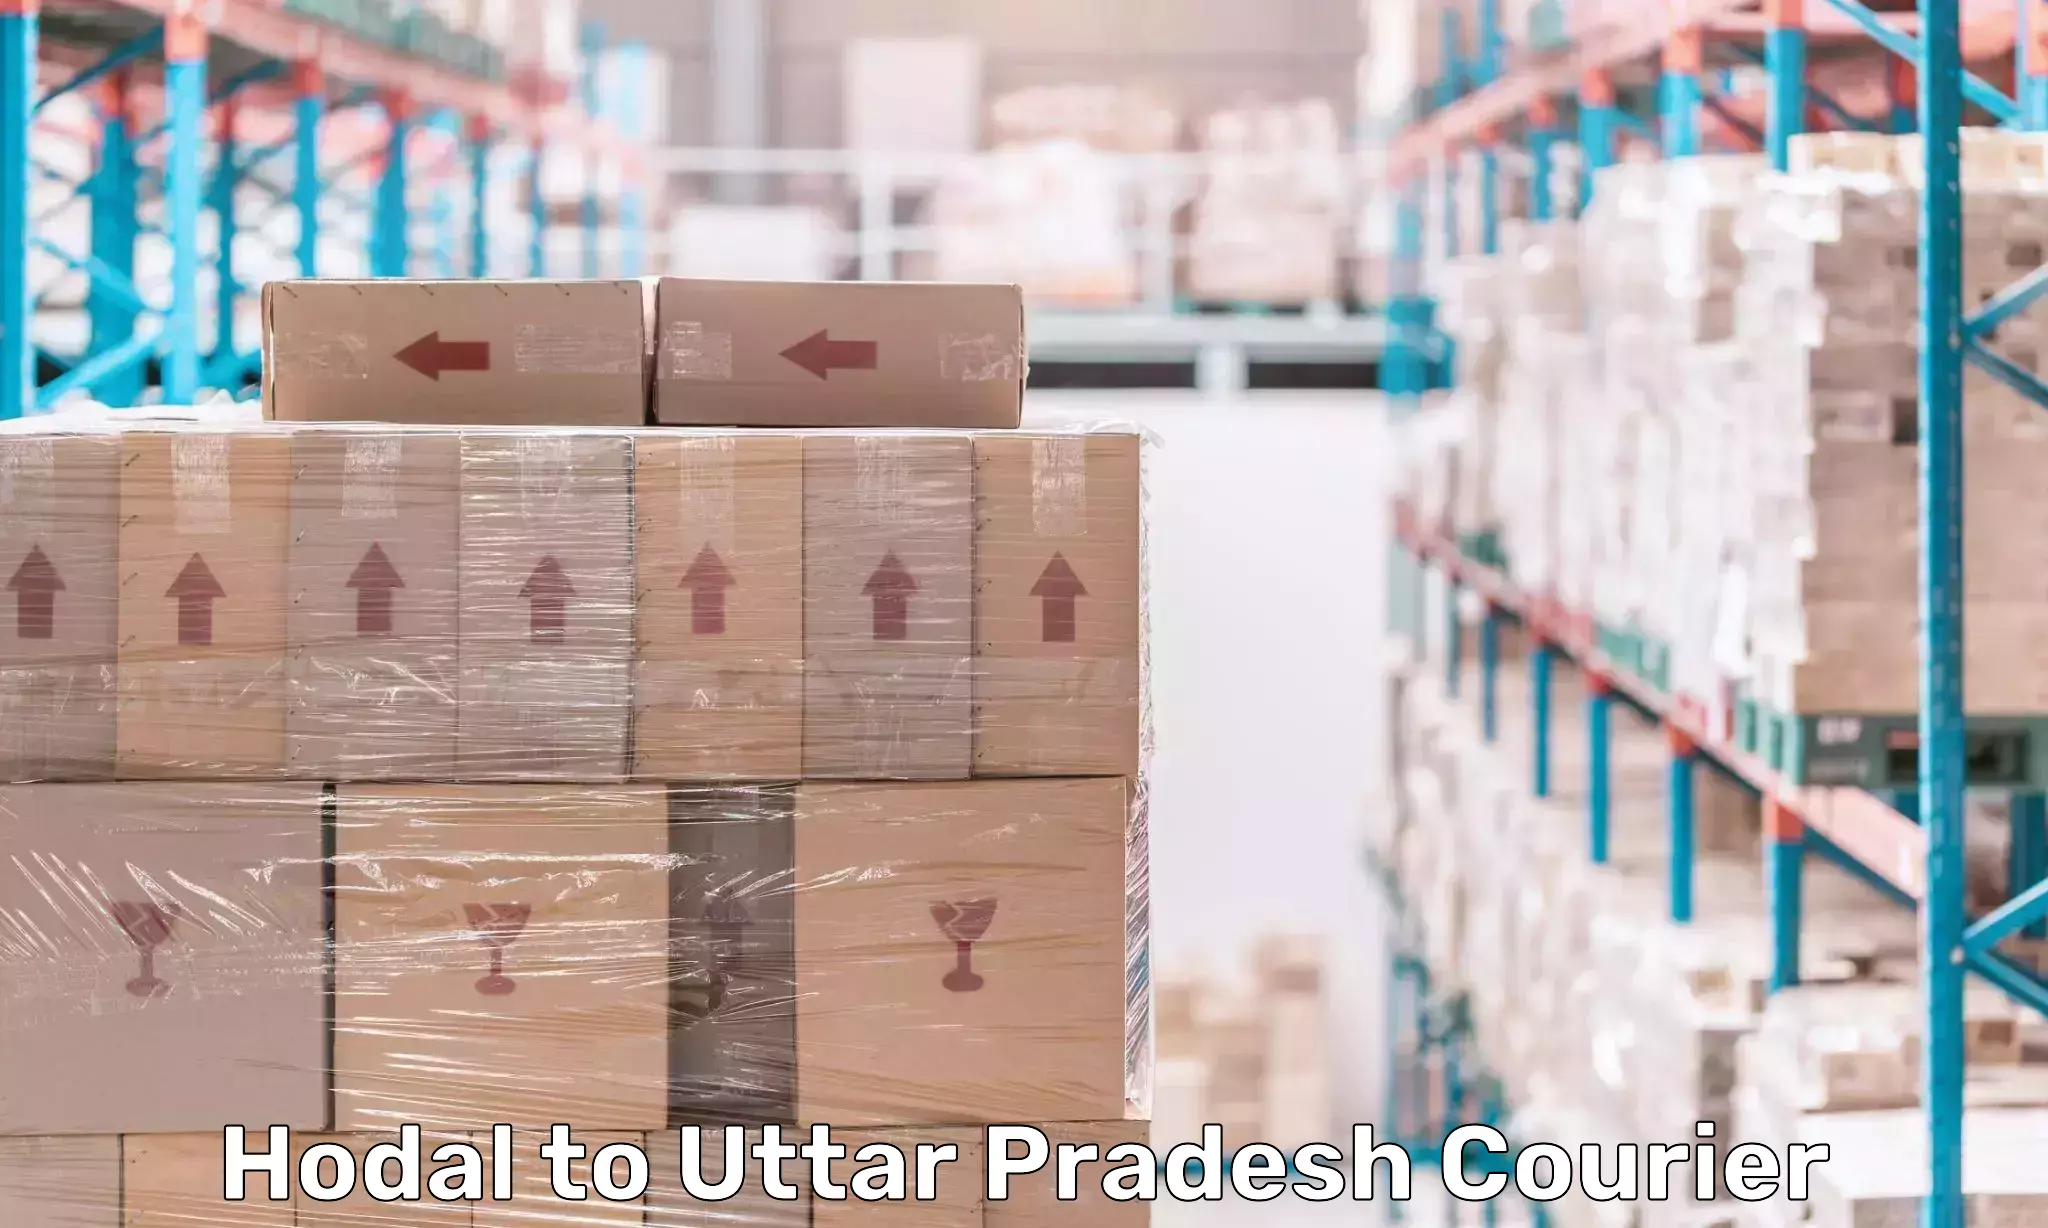 Speedy delivery service Hodal to Uttar Pradesh